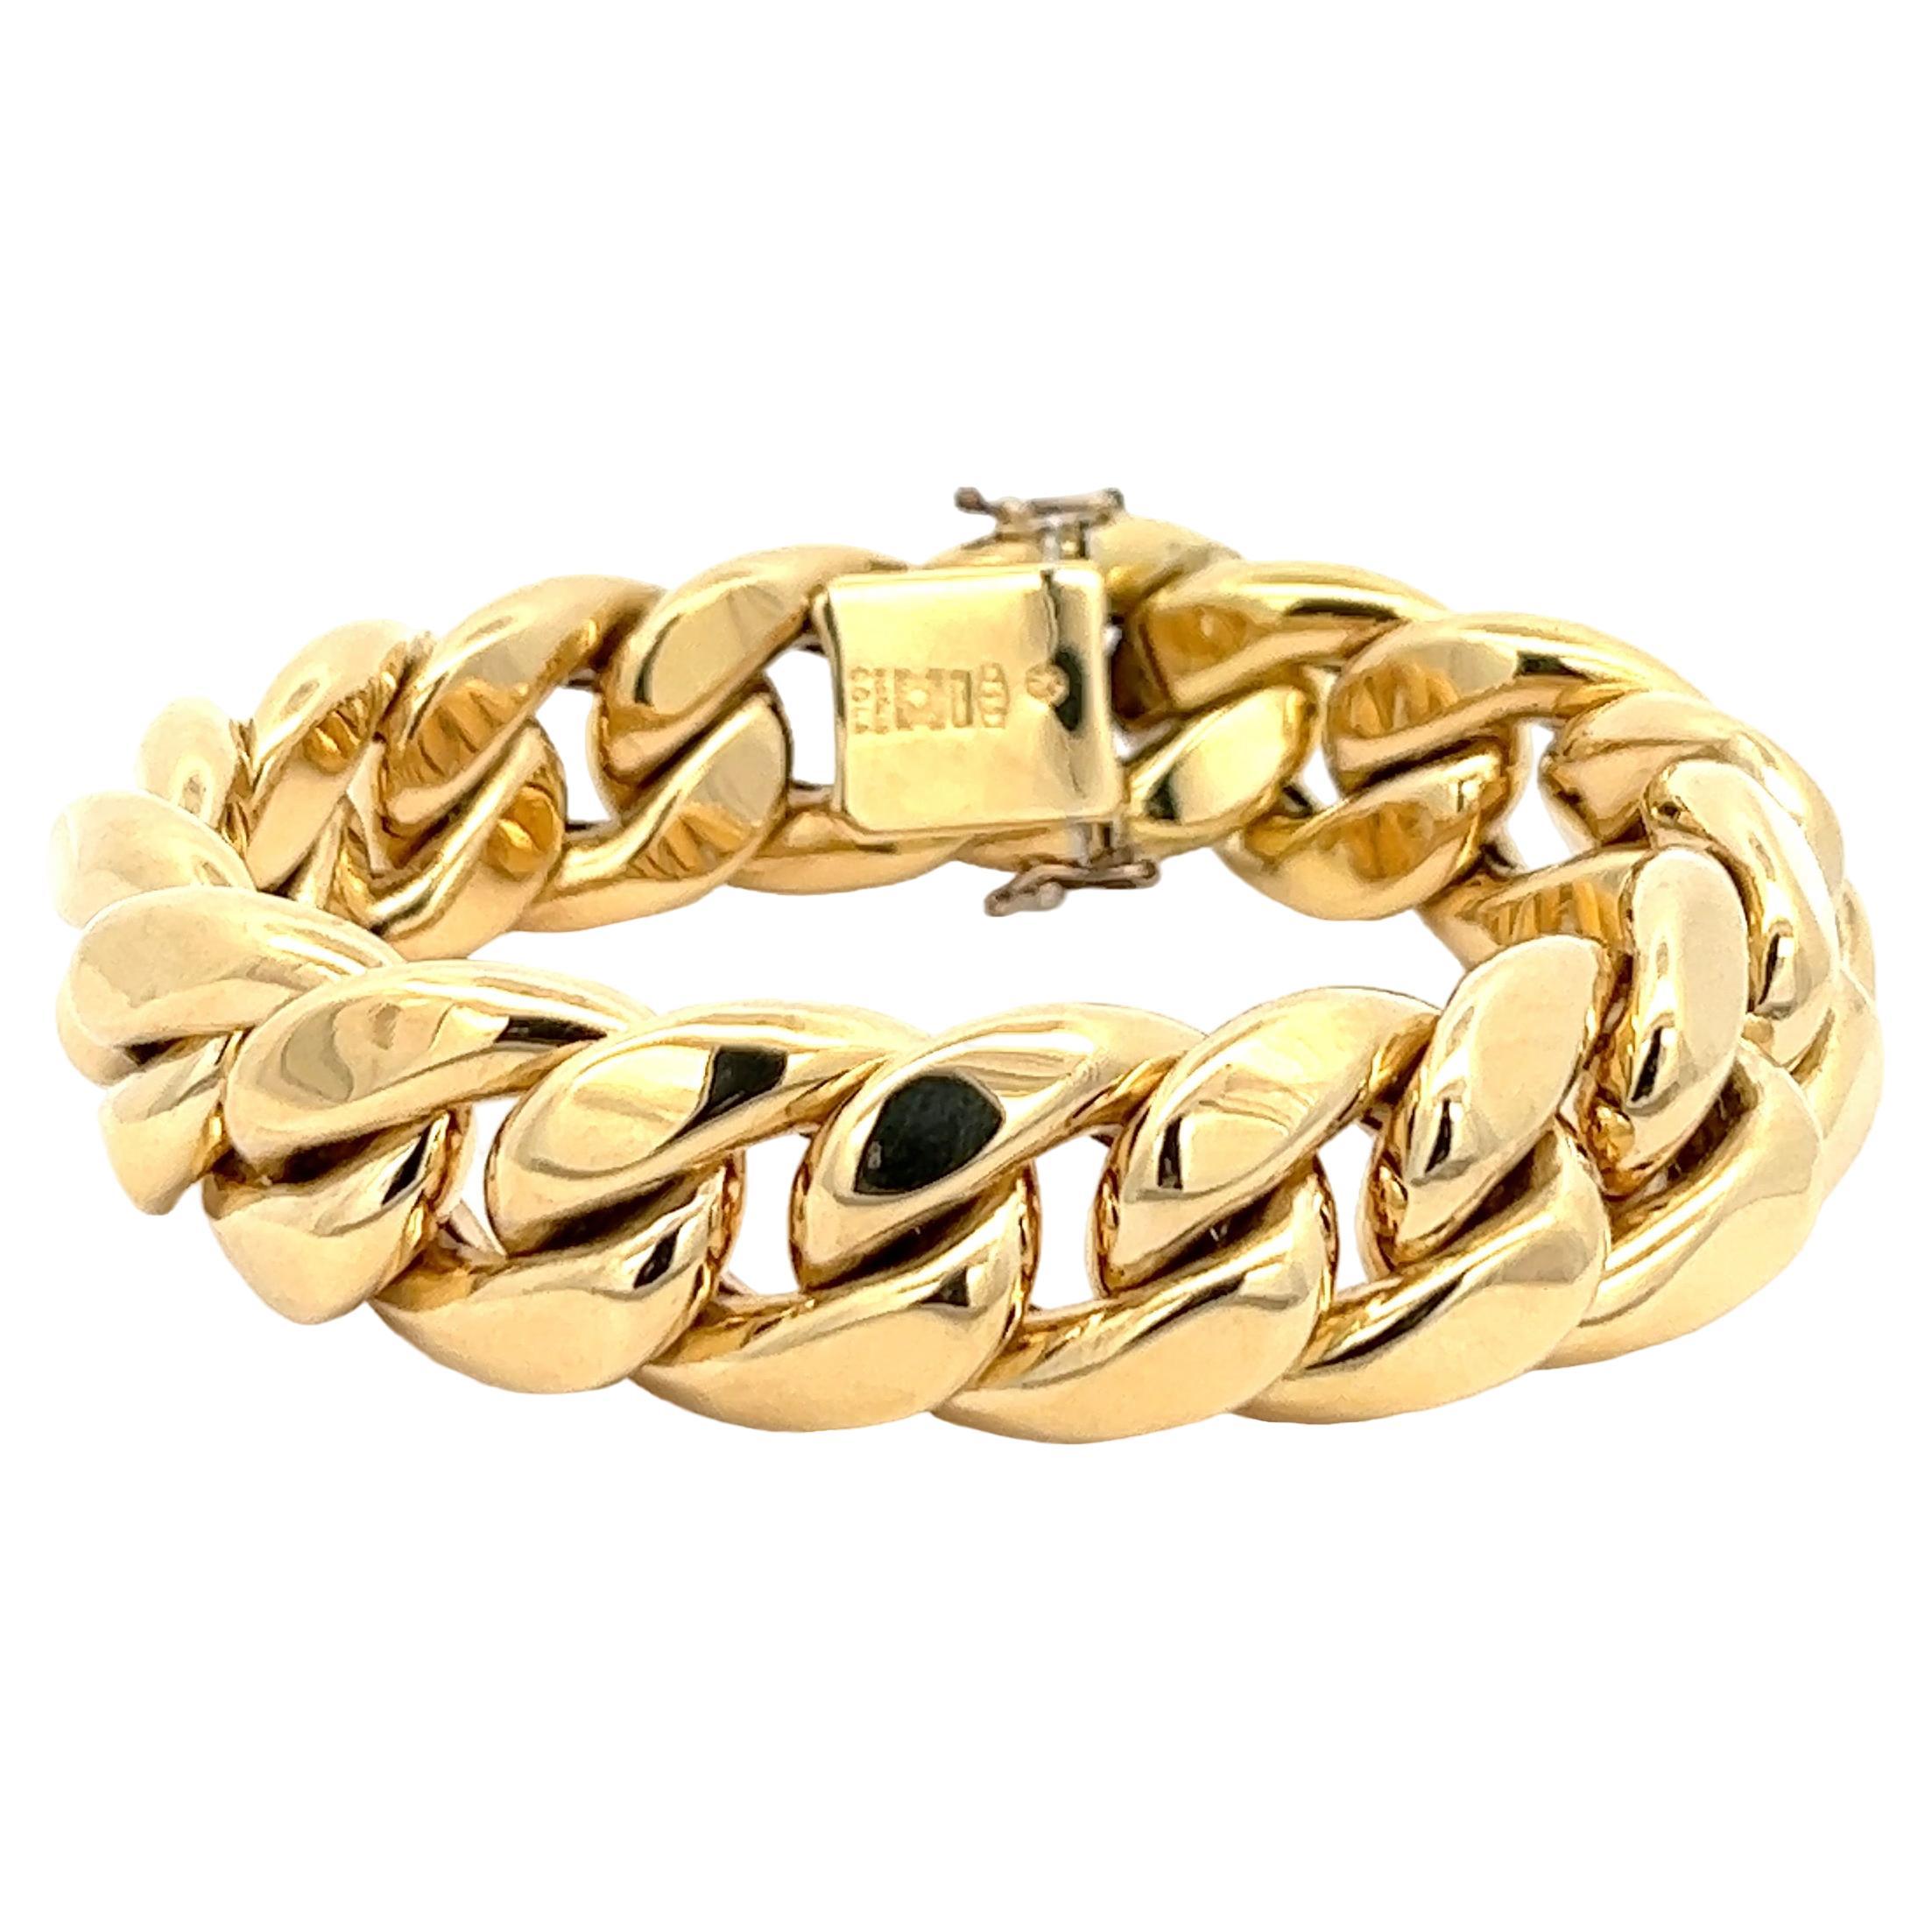 An 18k yellow gold bracelet by Nicolis Cola.